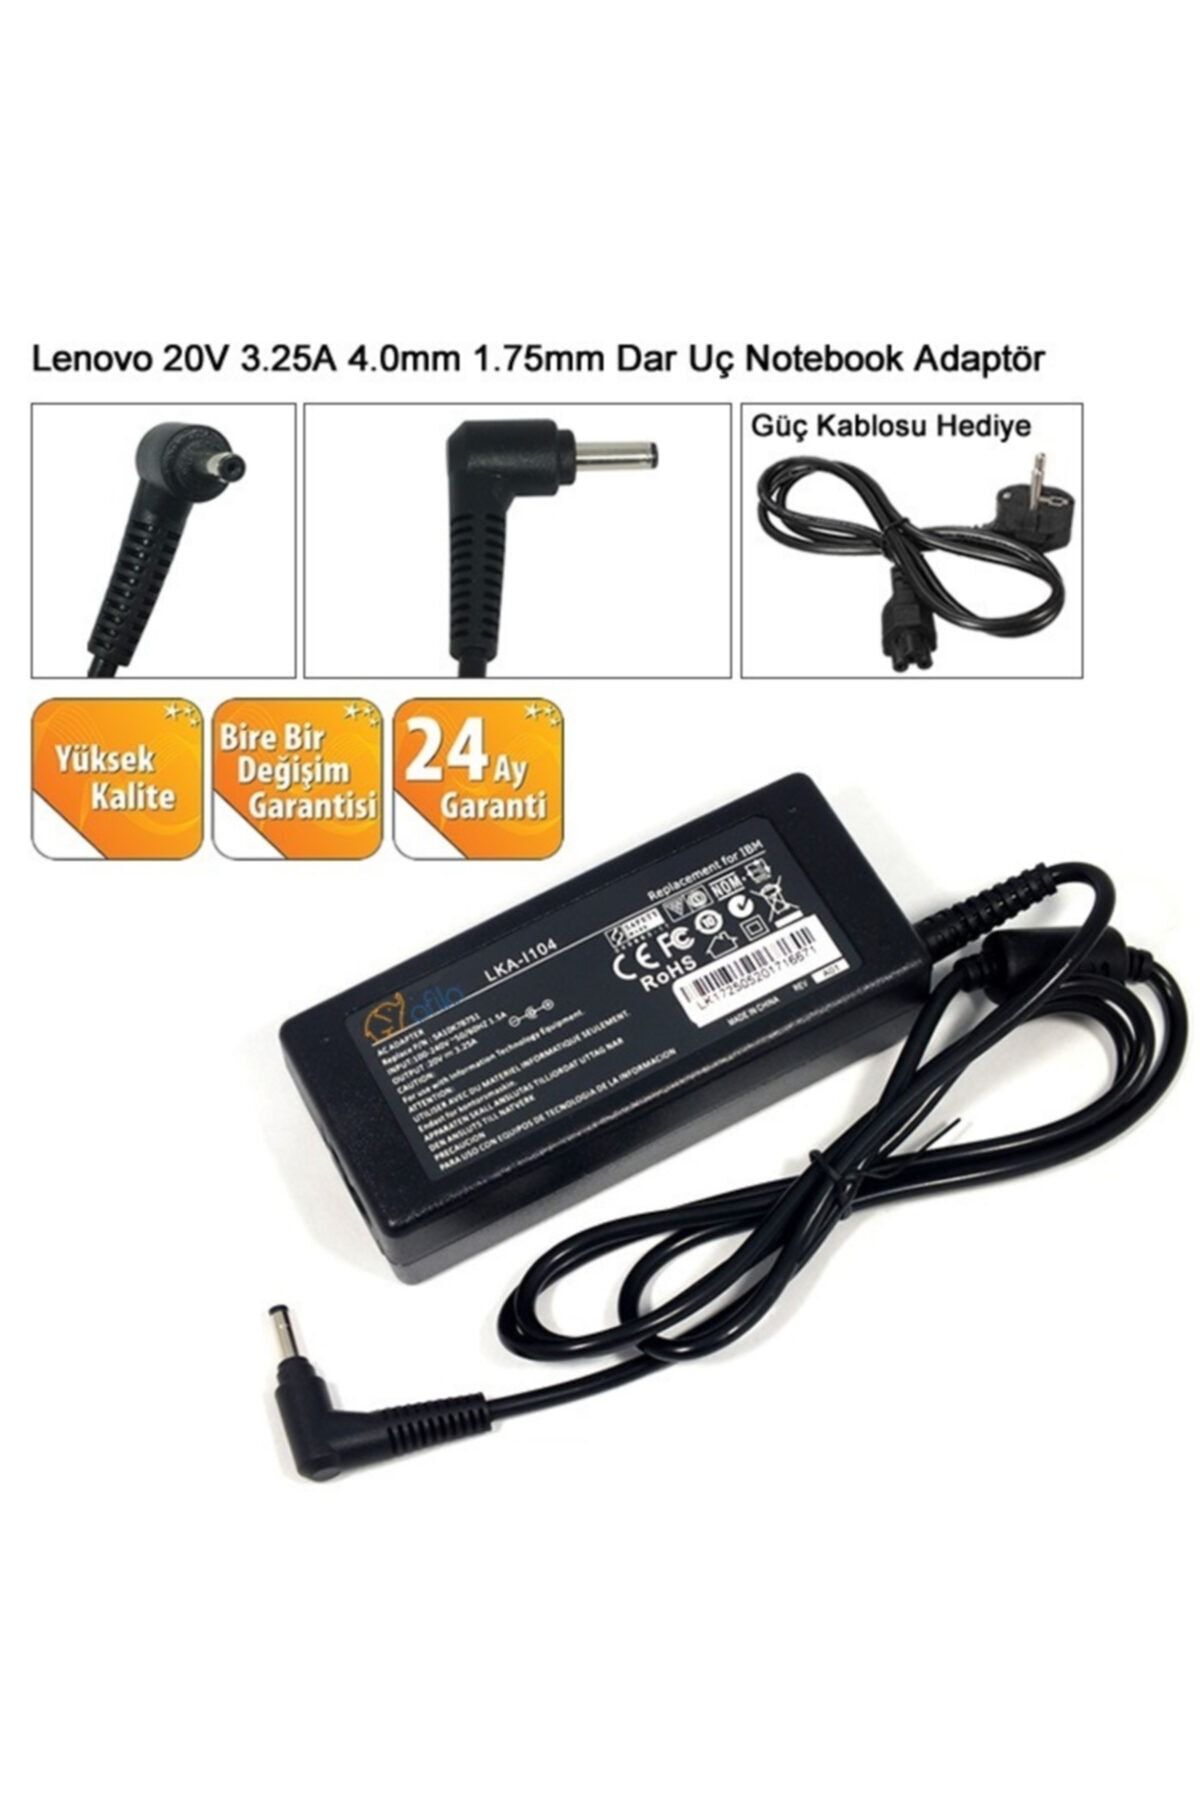 LENOVO Dlx65clgk2a Notebook Adaptörü 65w Şarj Cihazı (20v 3.25a)